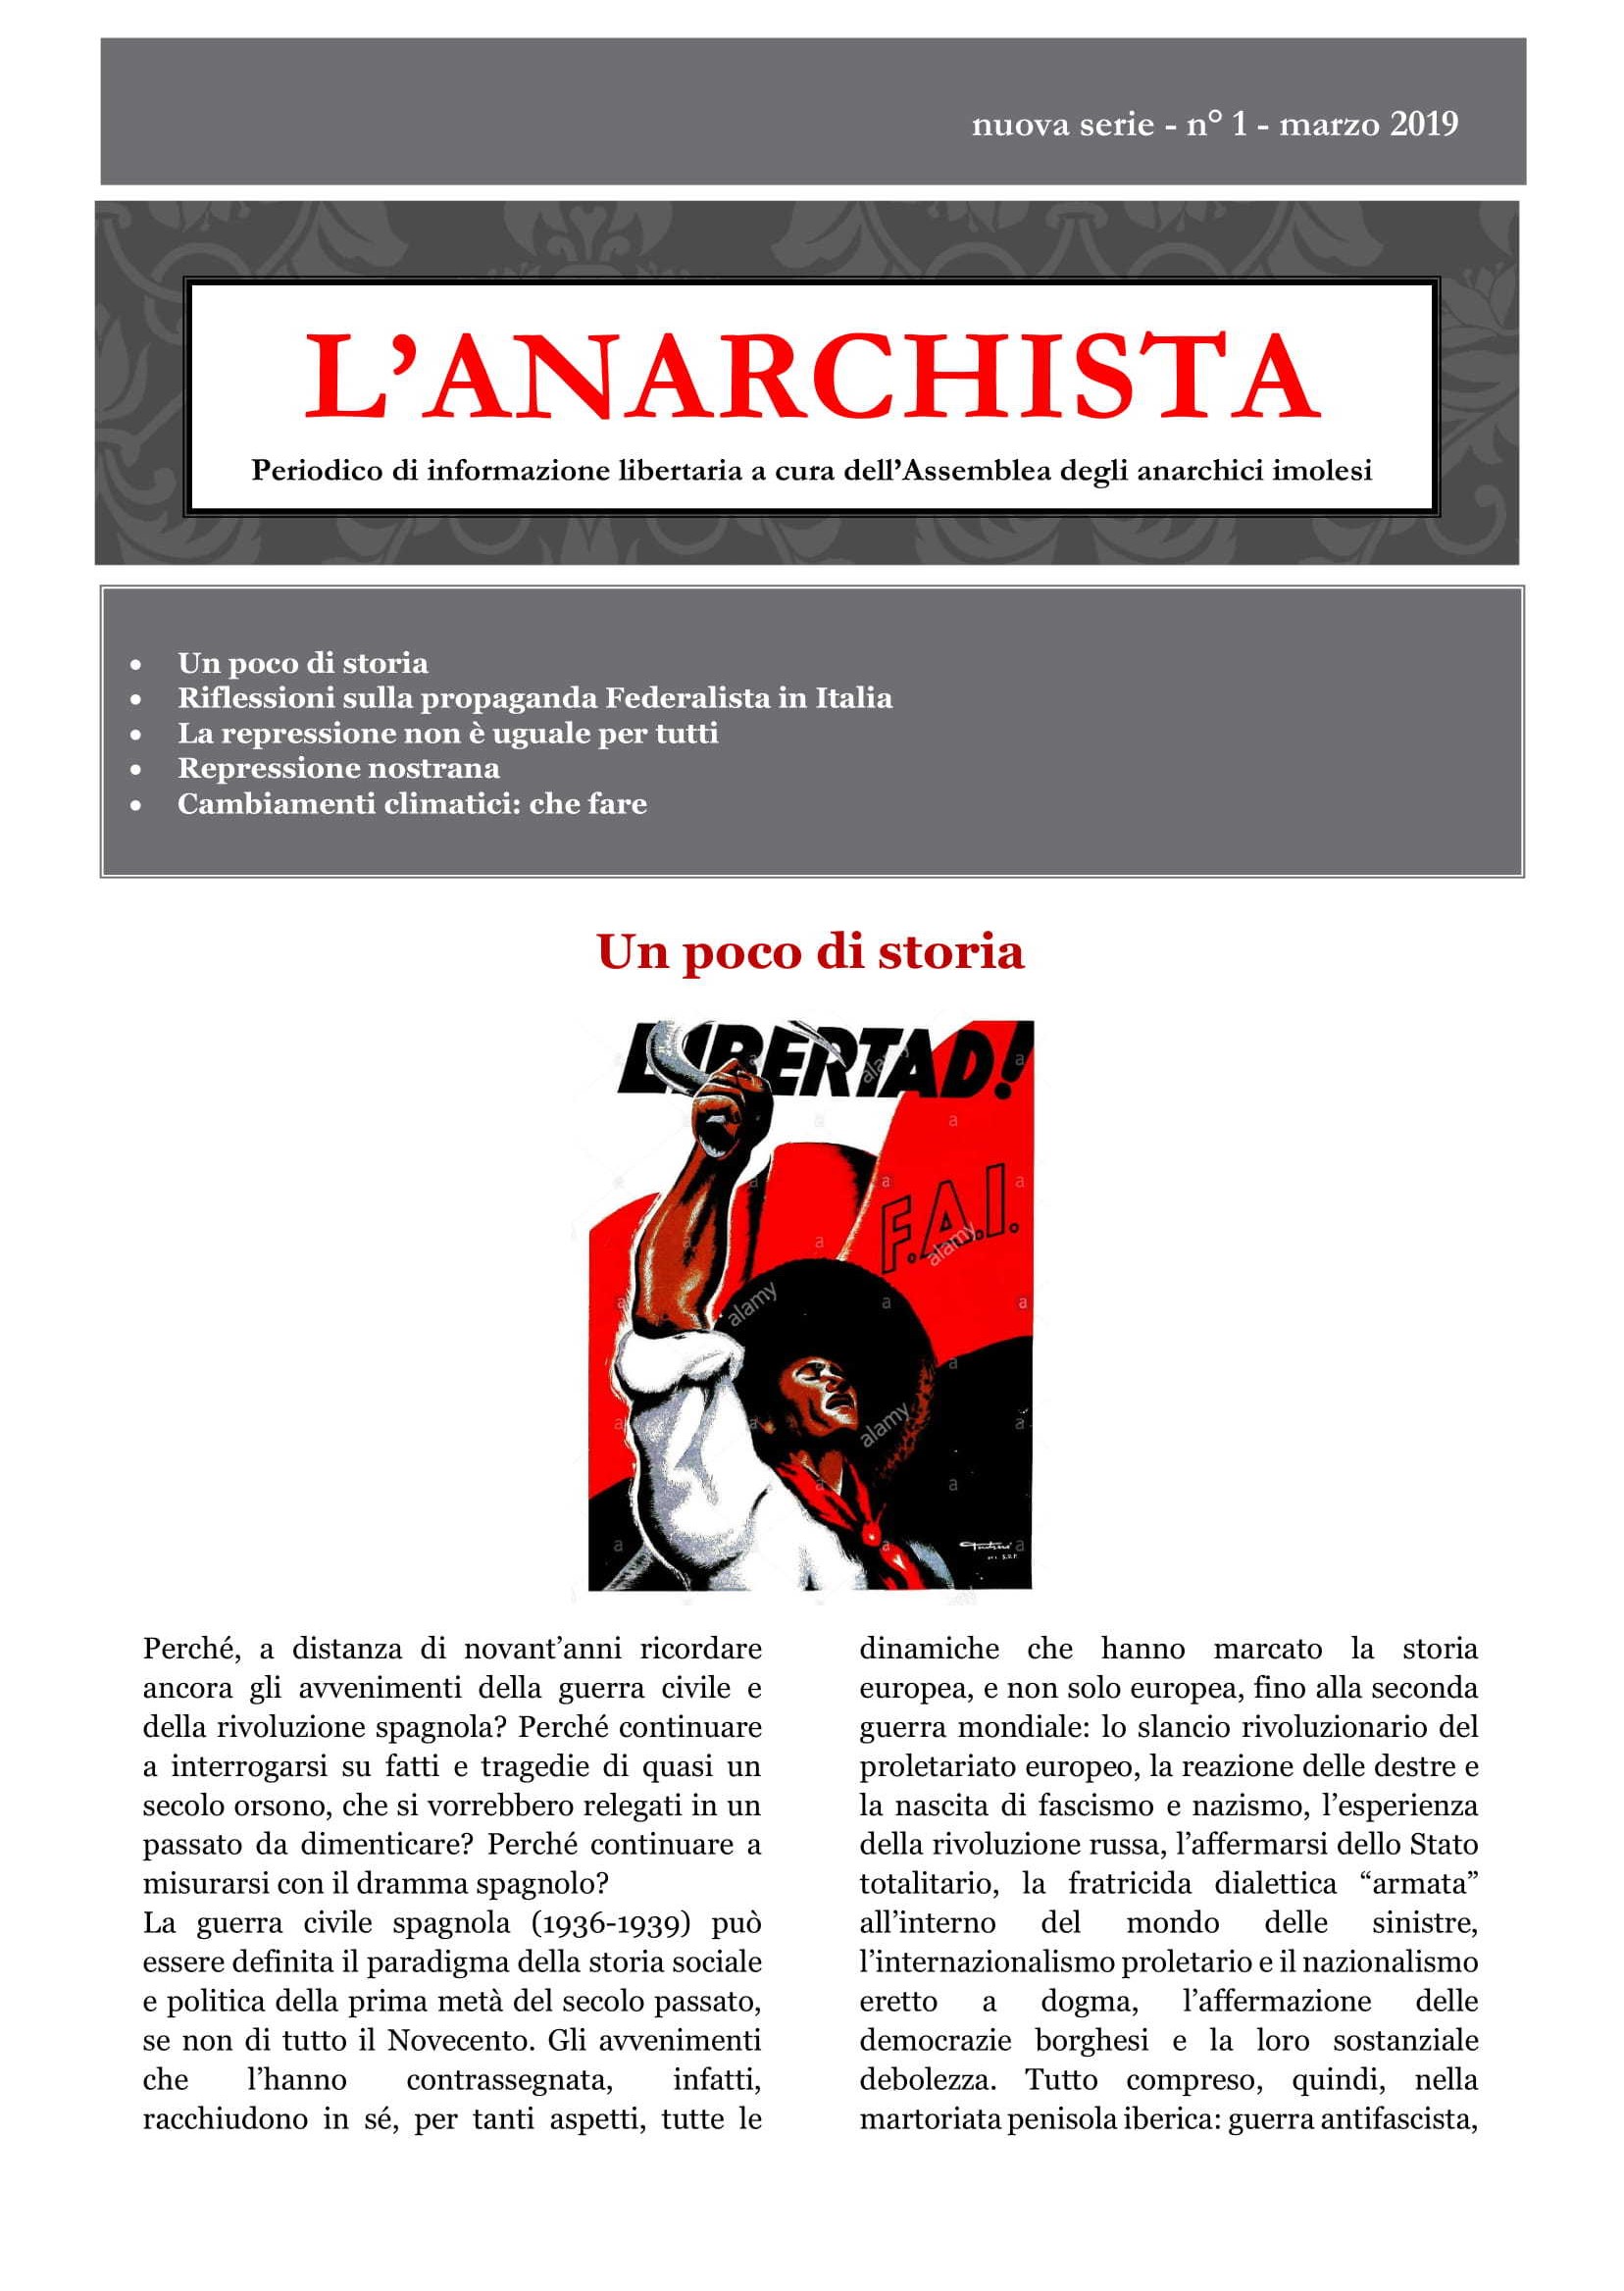 L’Anarchista (Imola)_2019_nuova serie